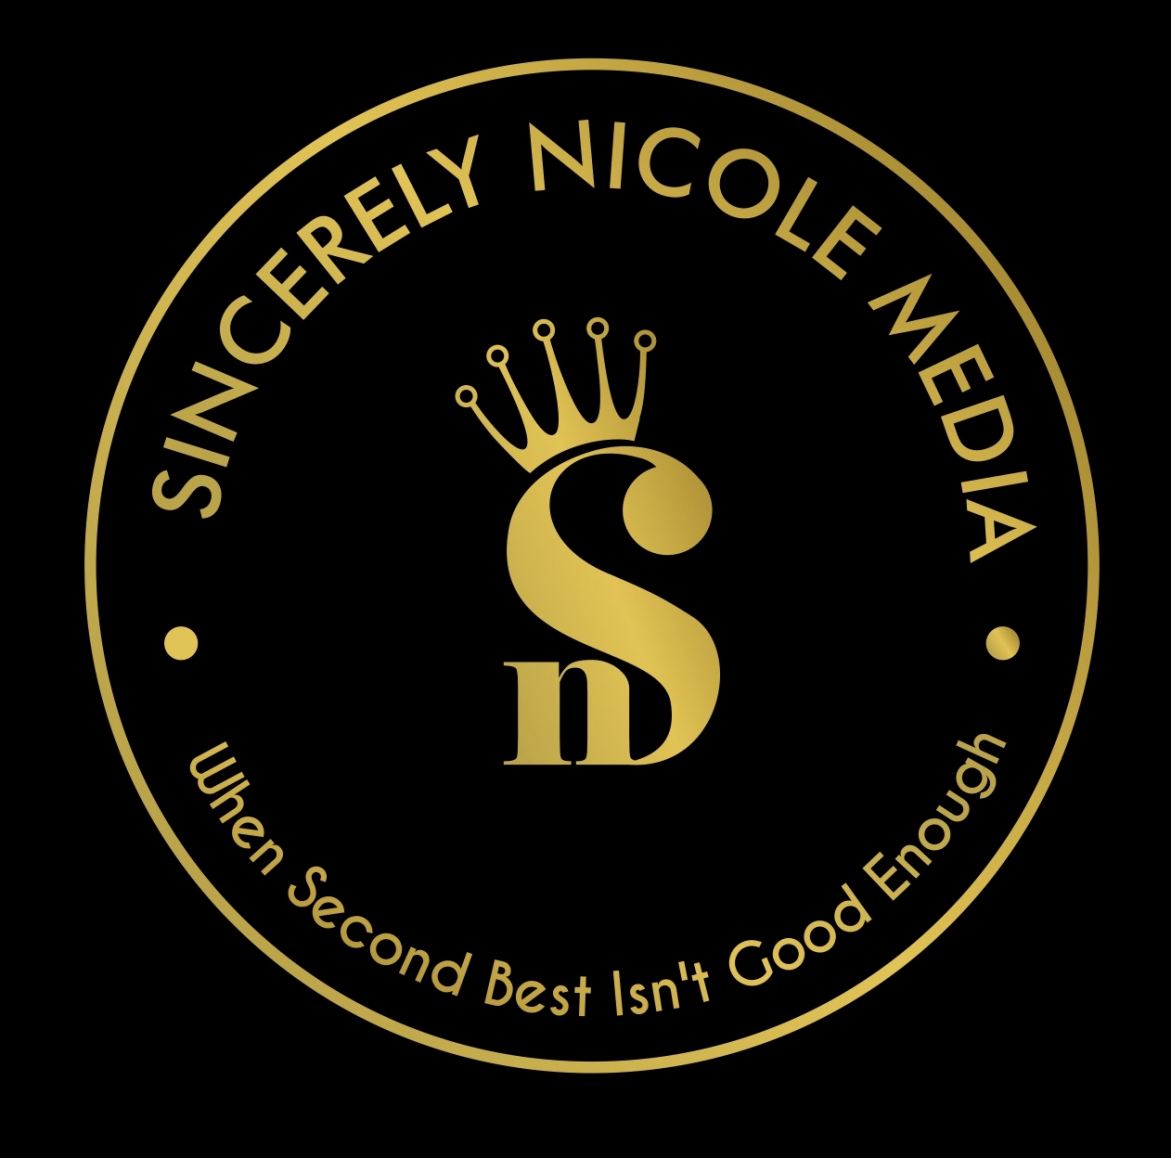 Sincerely Nicole Media Logo